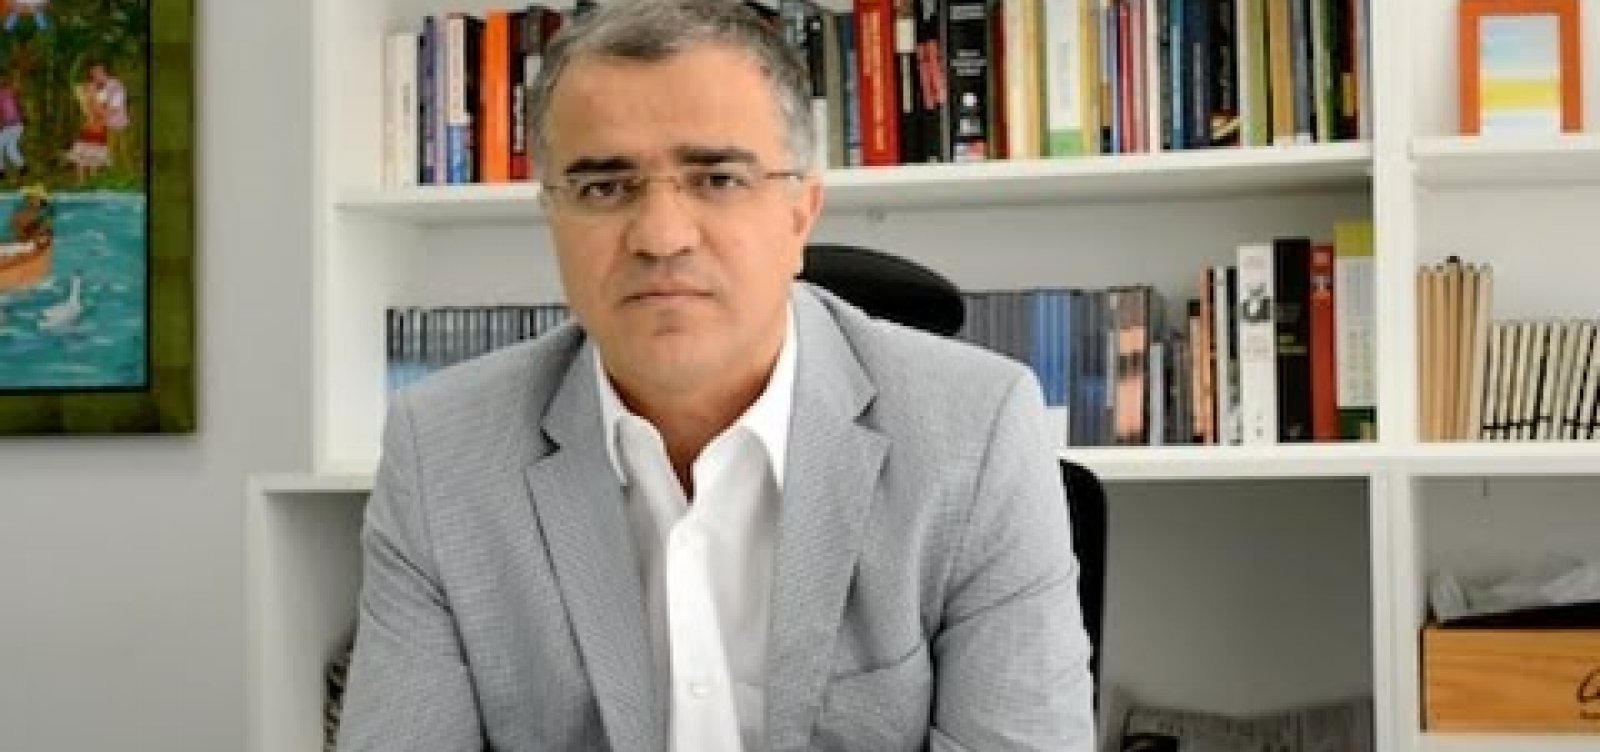 Kennedy Alencar diz que Bolsonaro tem ‘comportamento genocida’ diante de pandemia